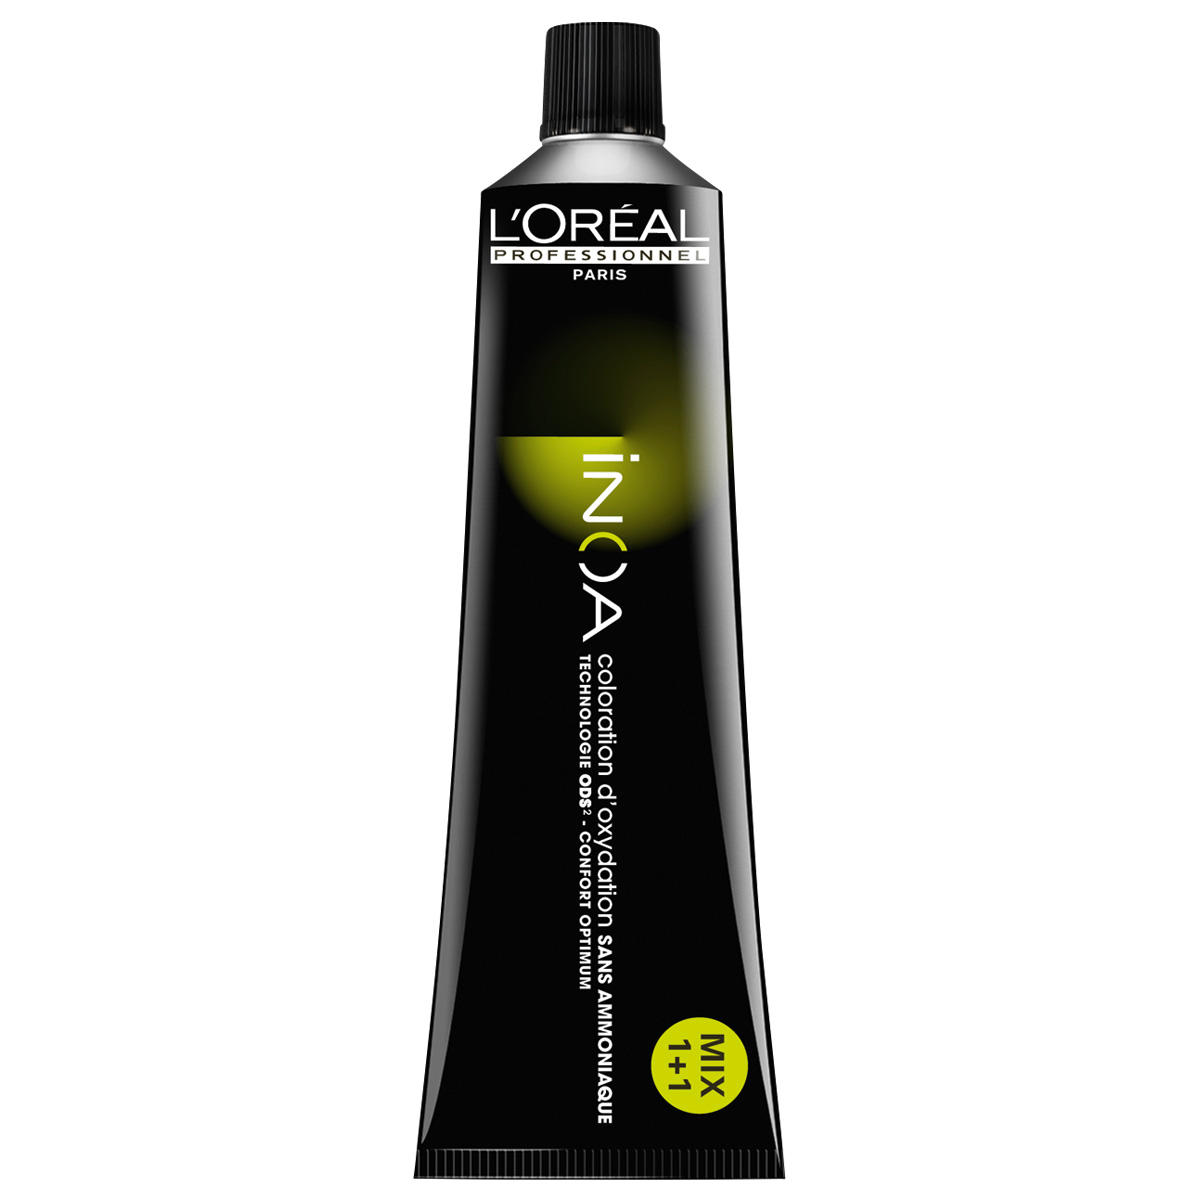 L'Oréal Professionnel Paris Coloration 6.32 Irisé oro biondo scuro, tubo 60 ml